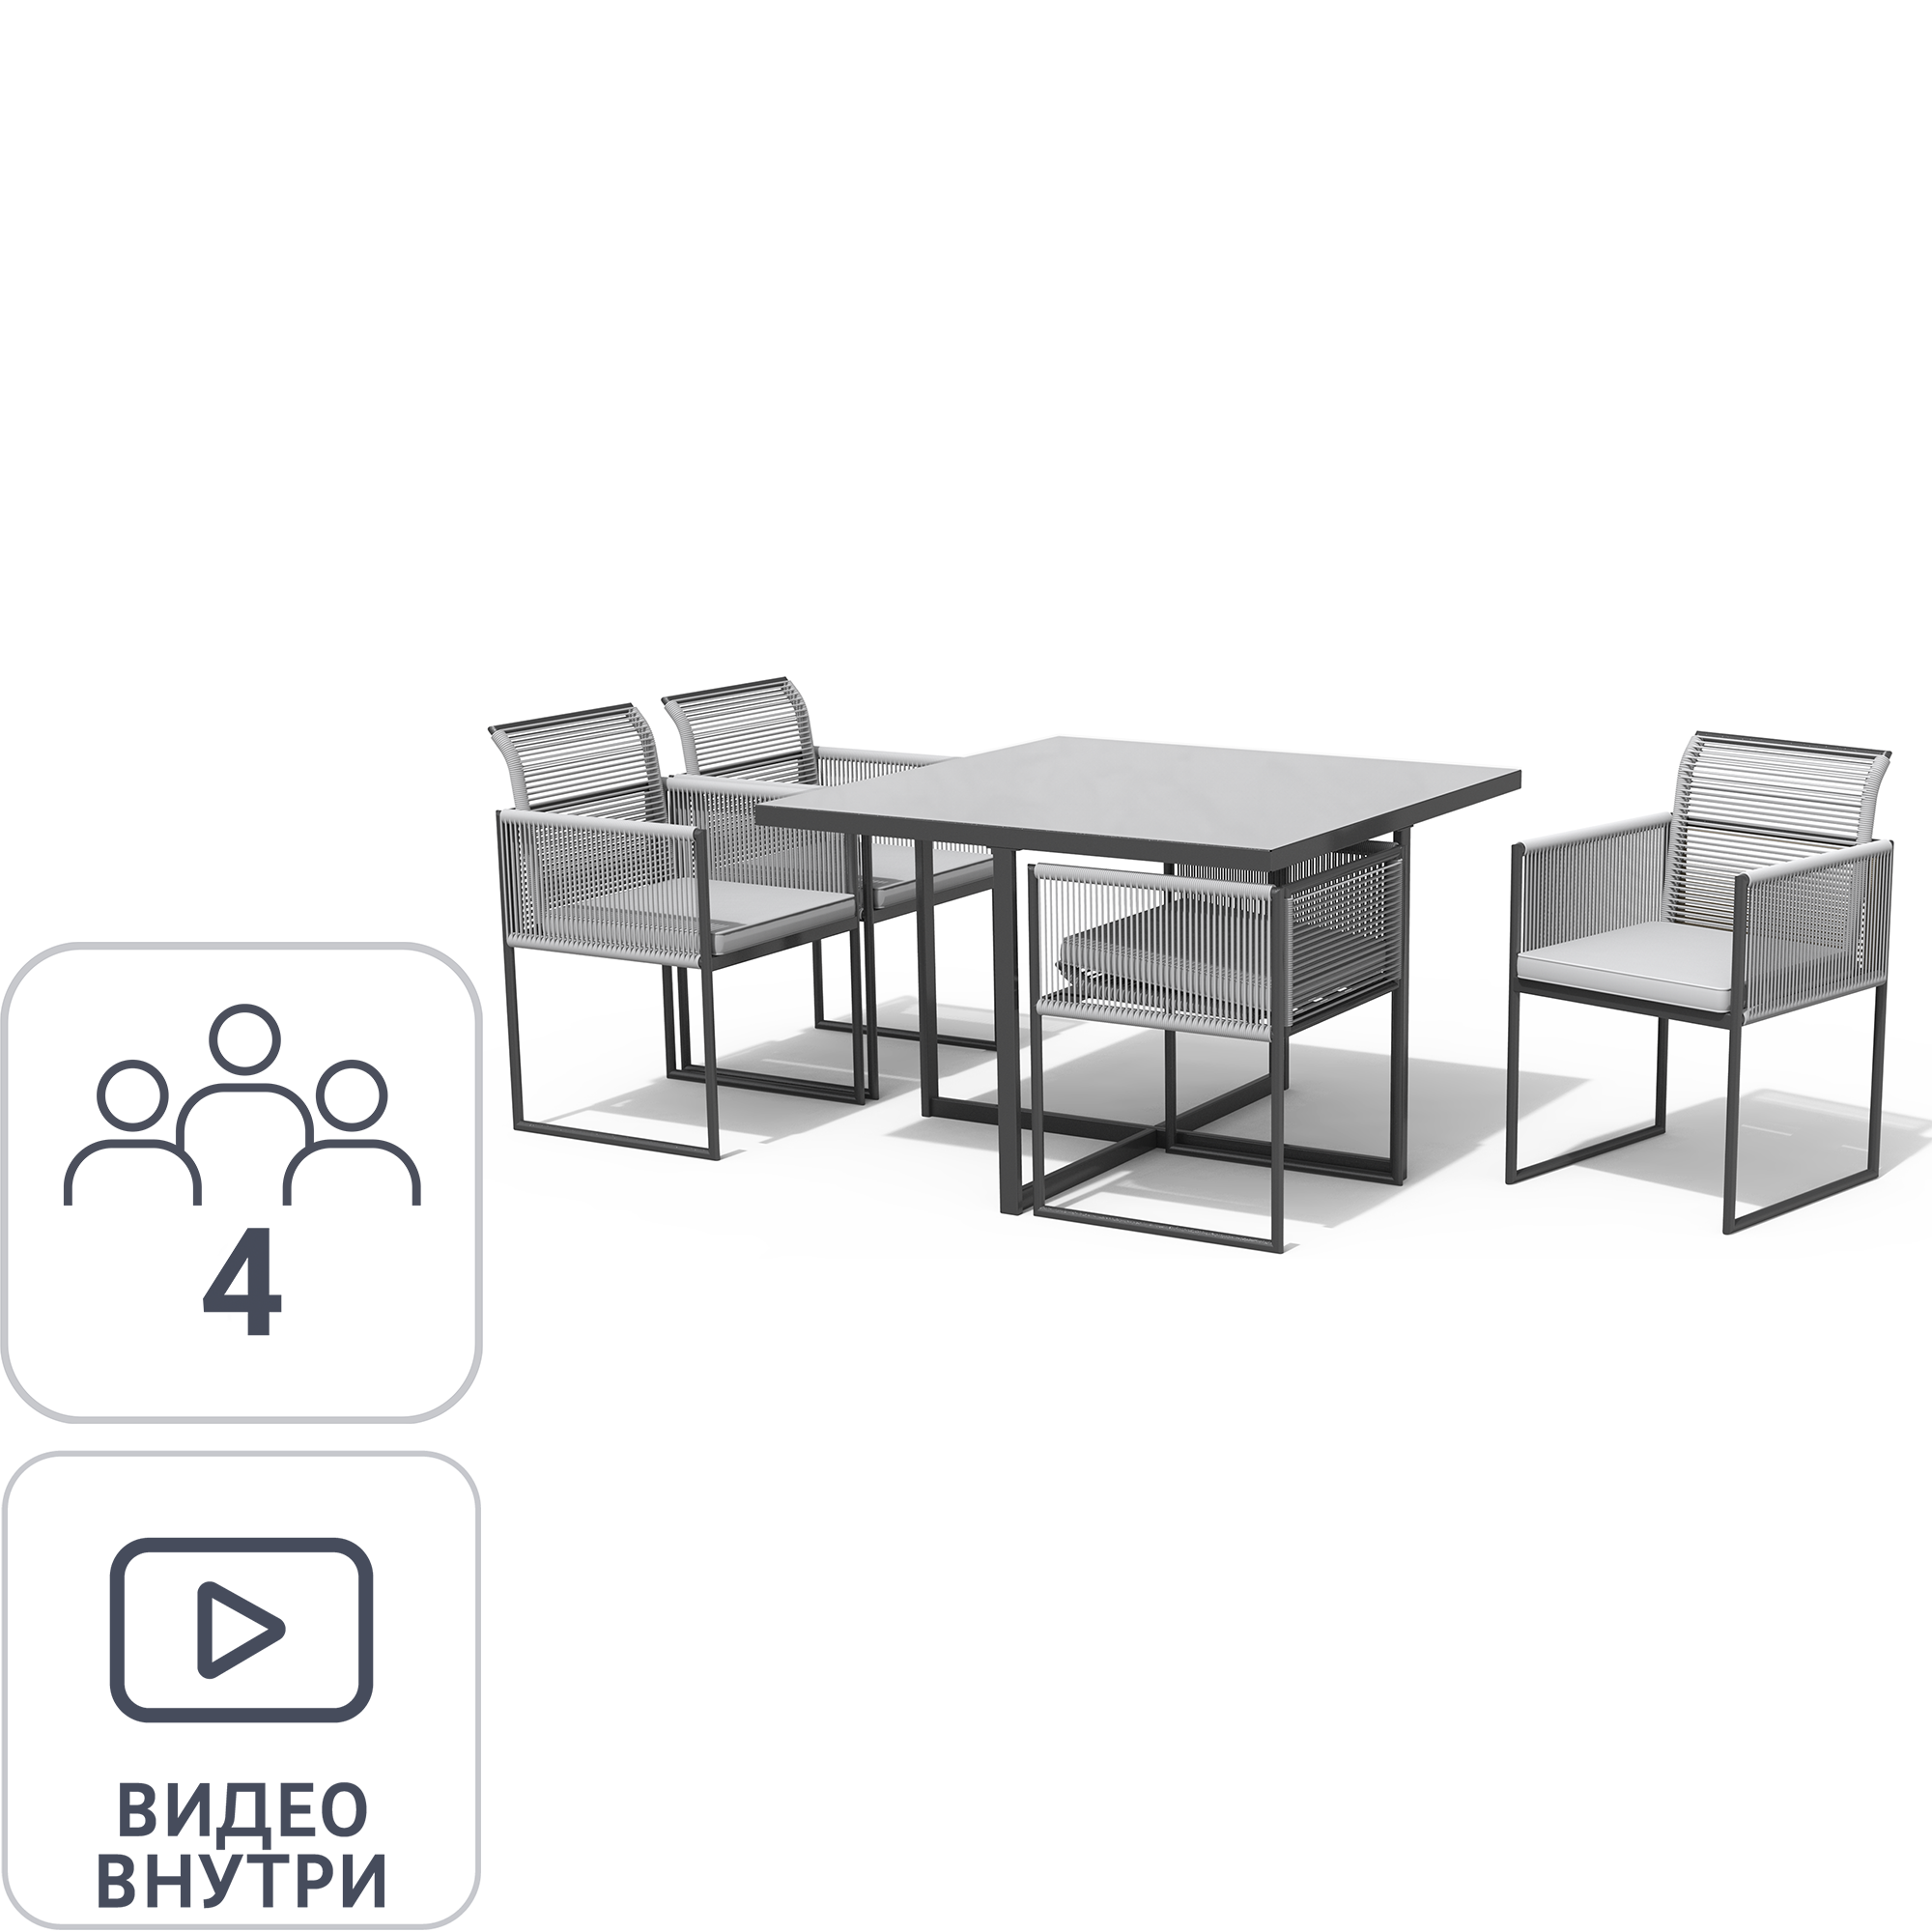 84855722 Набор обеденной мебели Compass сталь/пластик темно-серый: стол и 4 стула STLM-0056174 NATERIAL